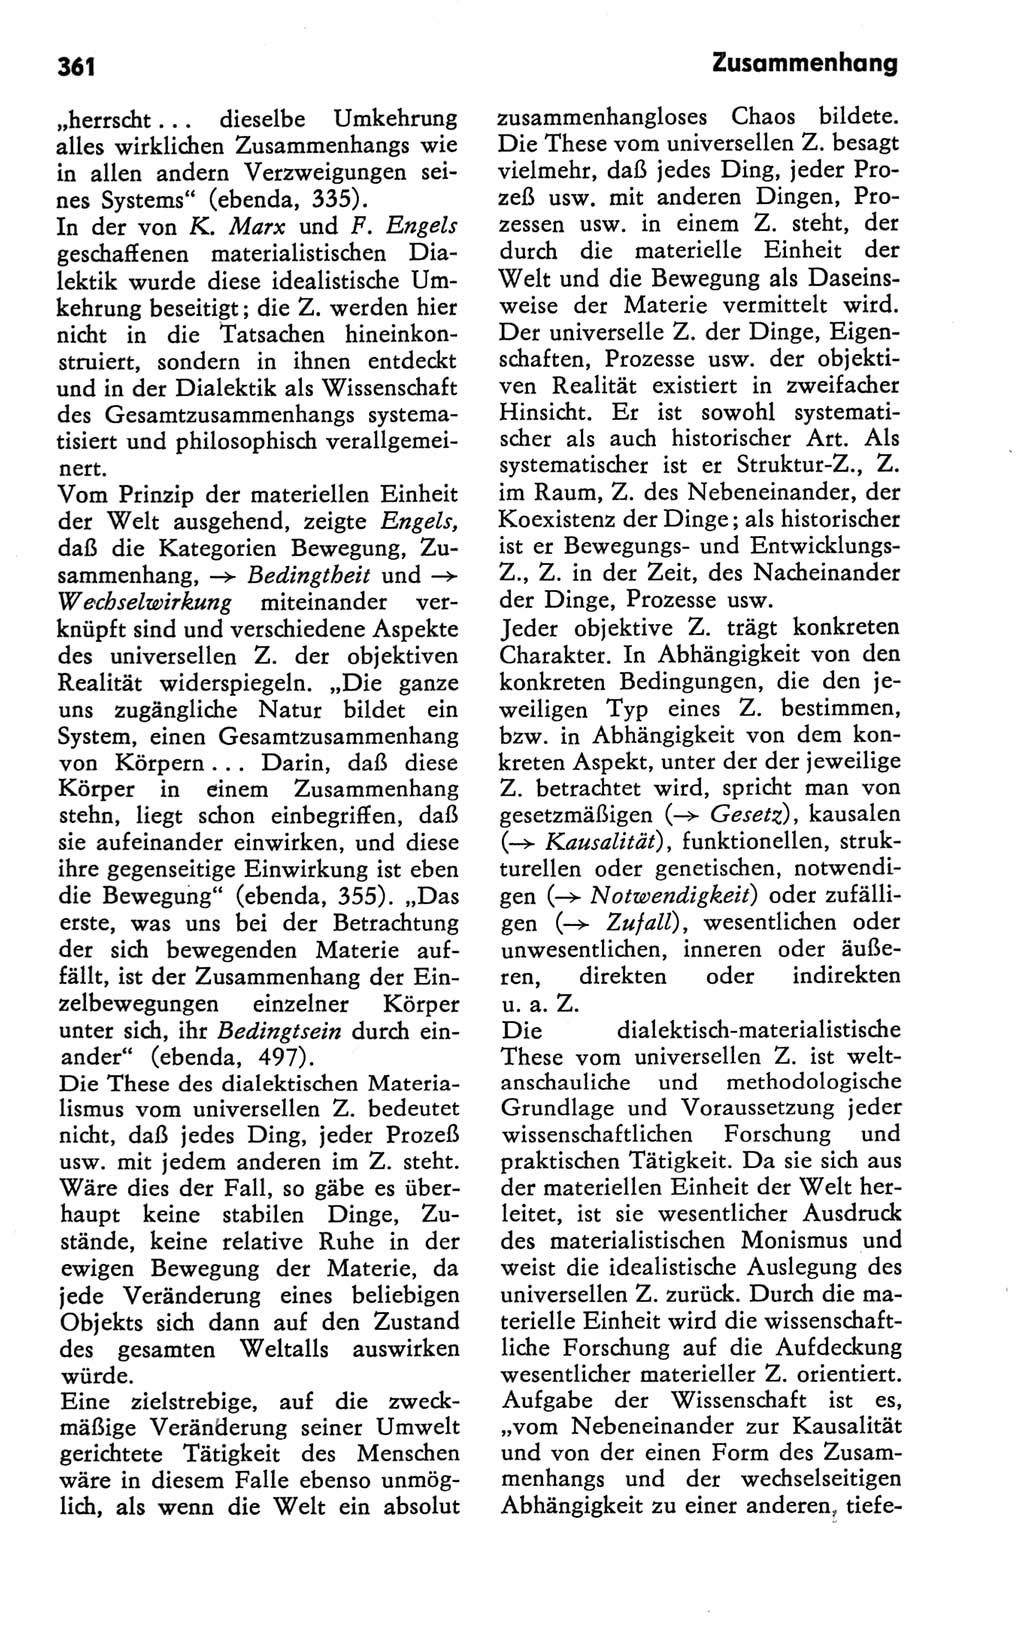 Kleines Wörterbuch der marxistisch-leninistischen Philosophie [Deutsche Demokratische Republik (DDR)] 1981, Seite 361 (Kl. Wb. ML Phil. DDR 1981, S. 361)